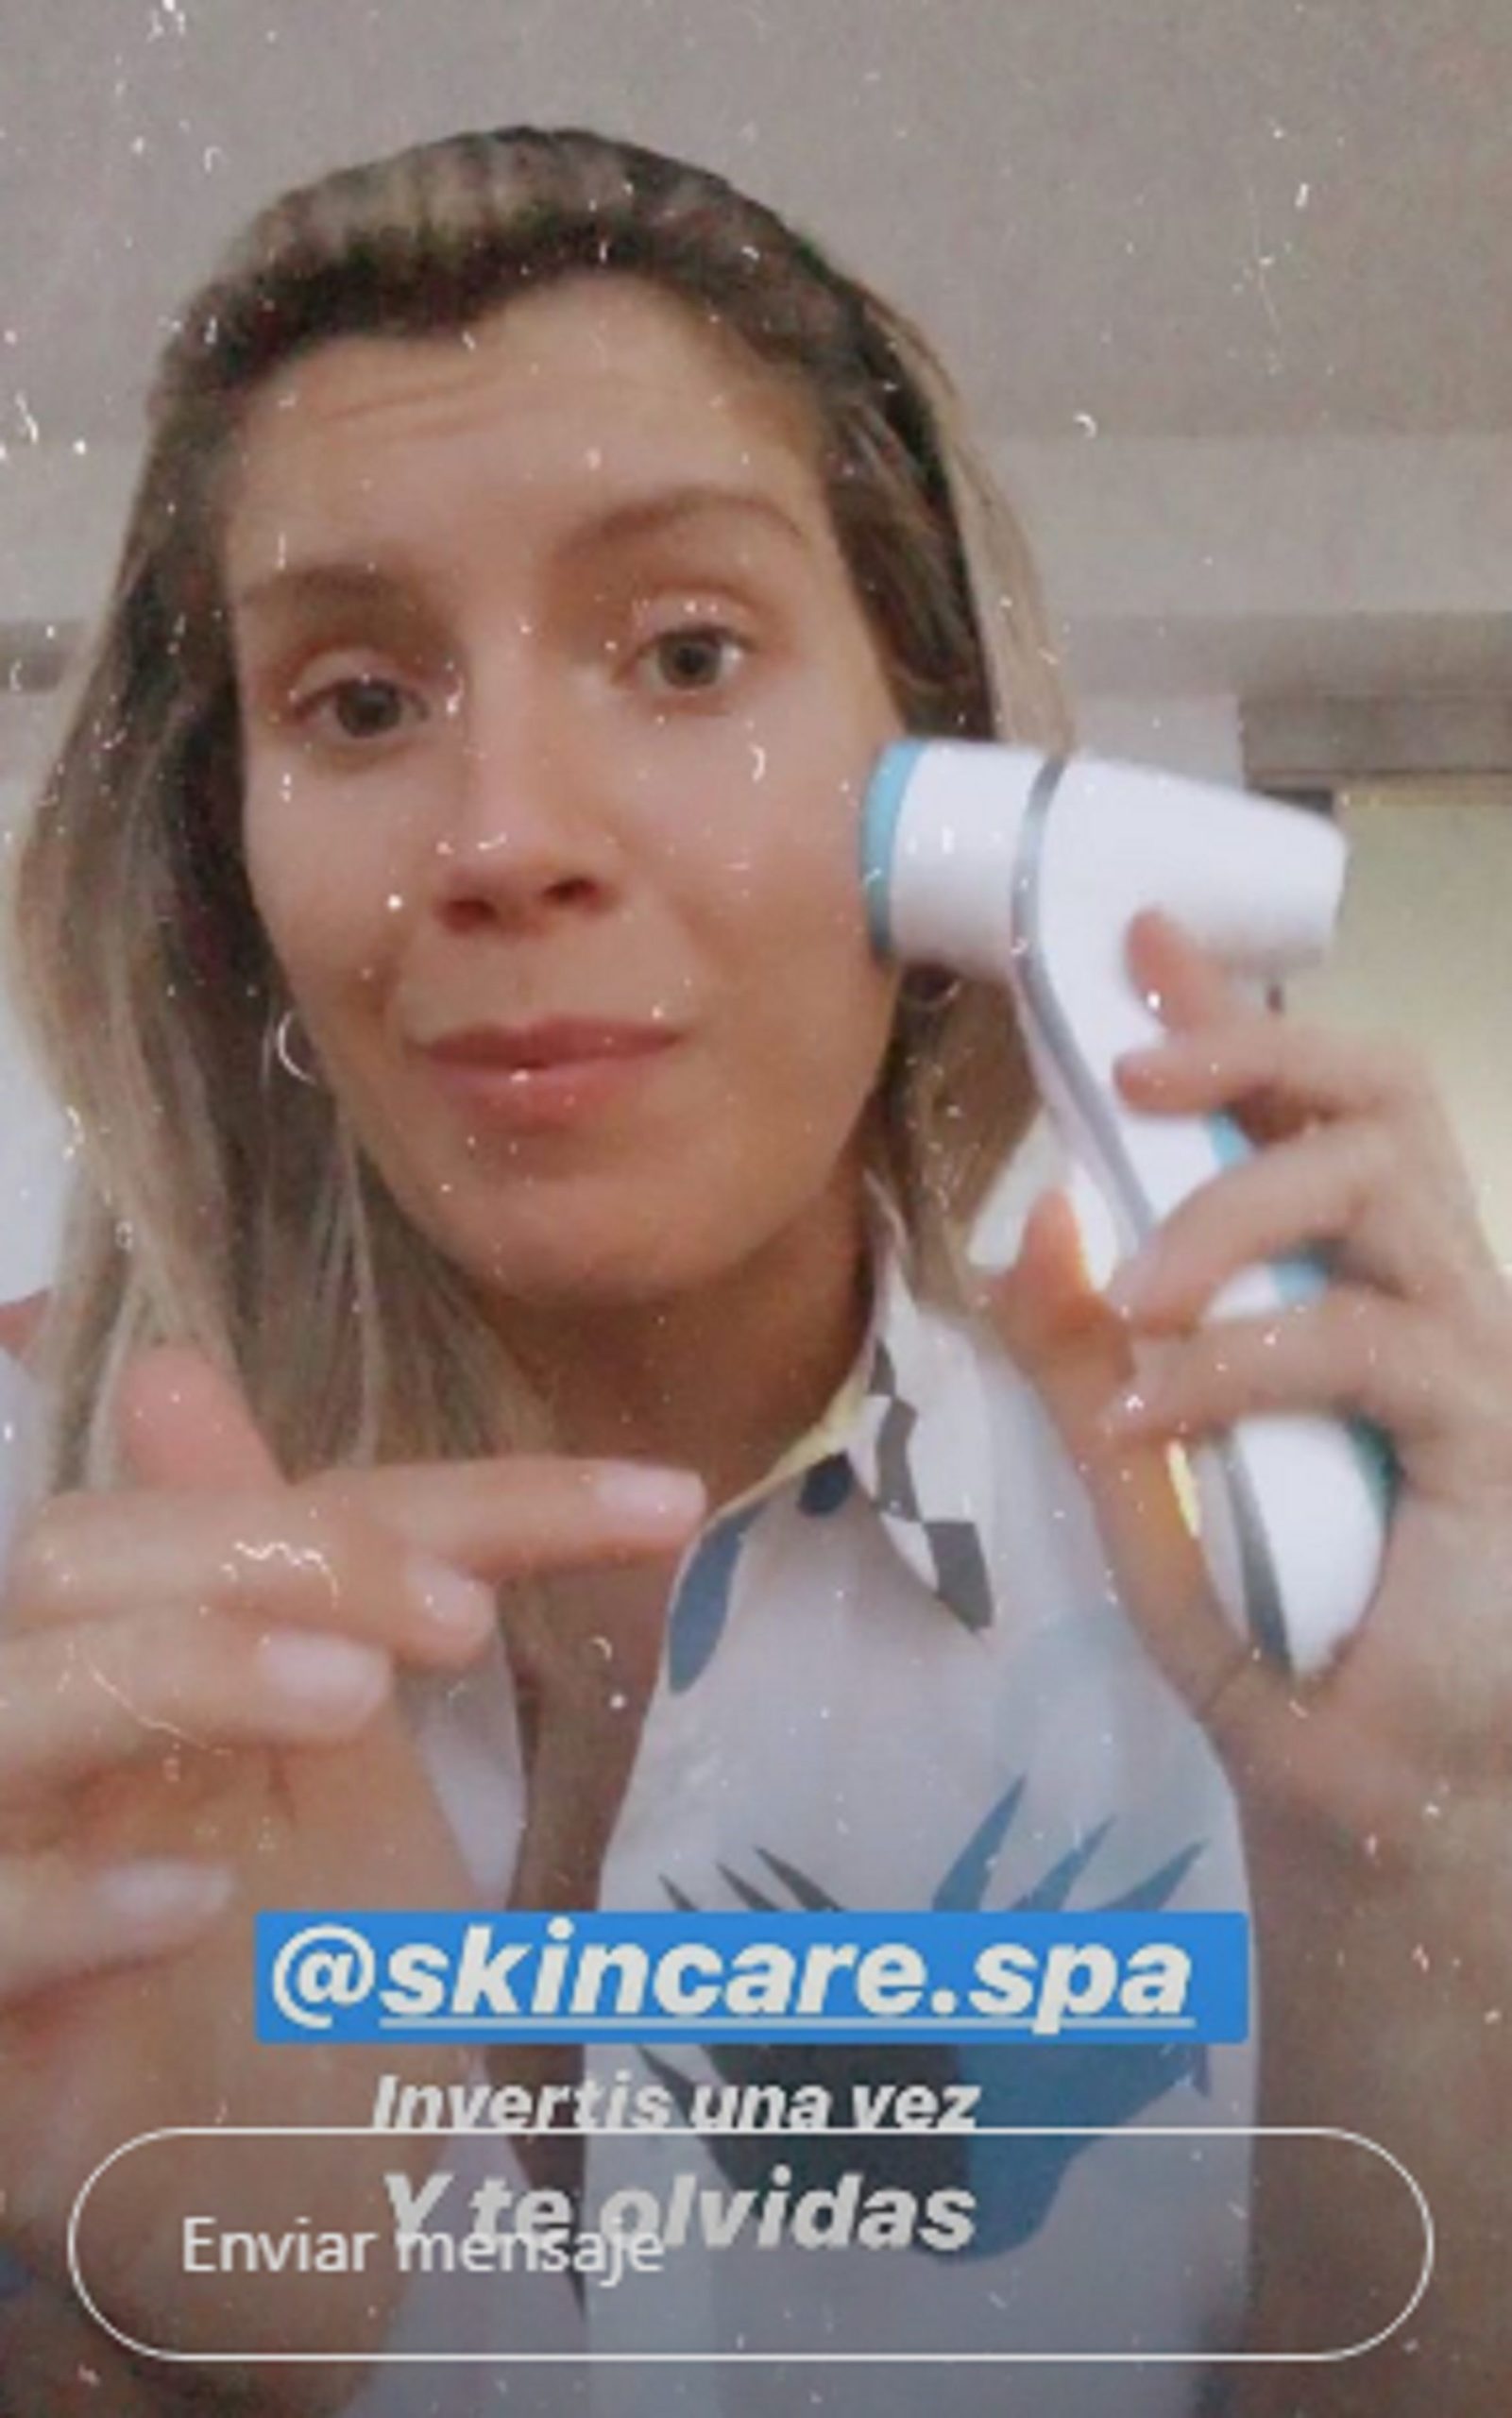 Laurita Fernández promocionó la máquina facial en sus redes sociales con el siguiente mensaje: "Invertís una vez y te olvidás"